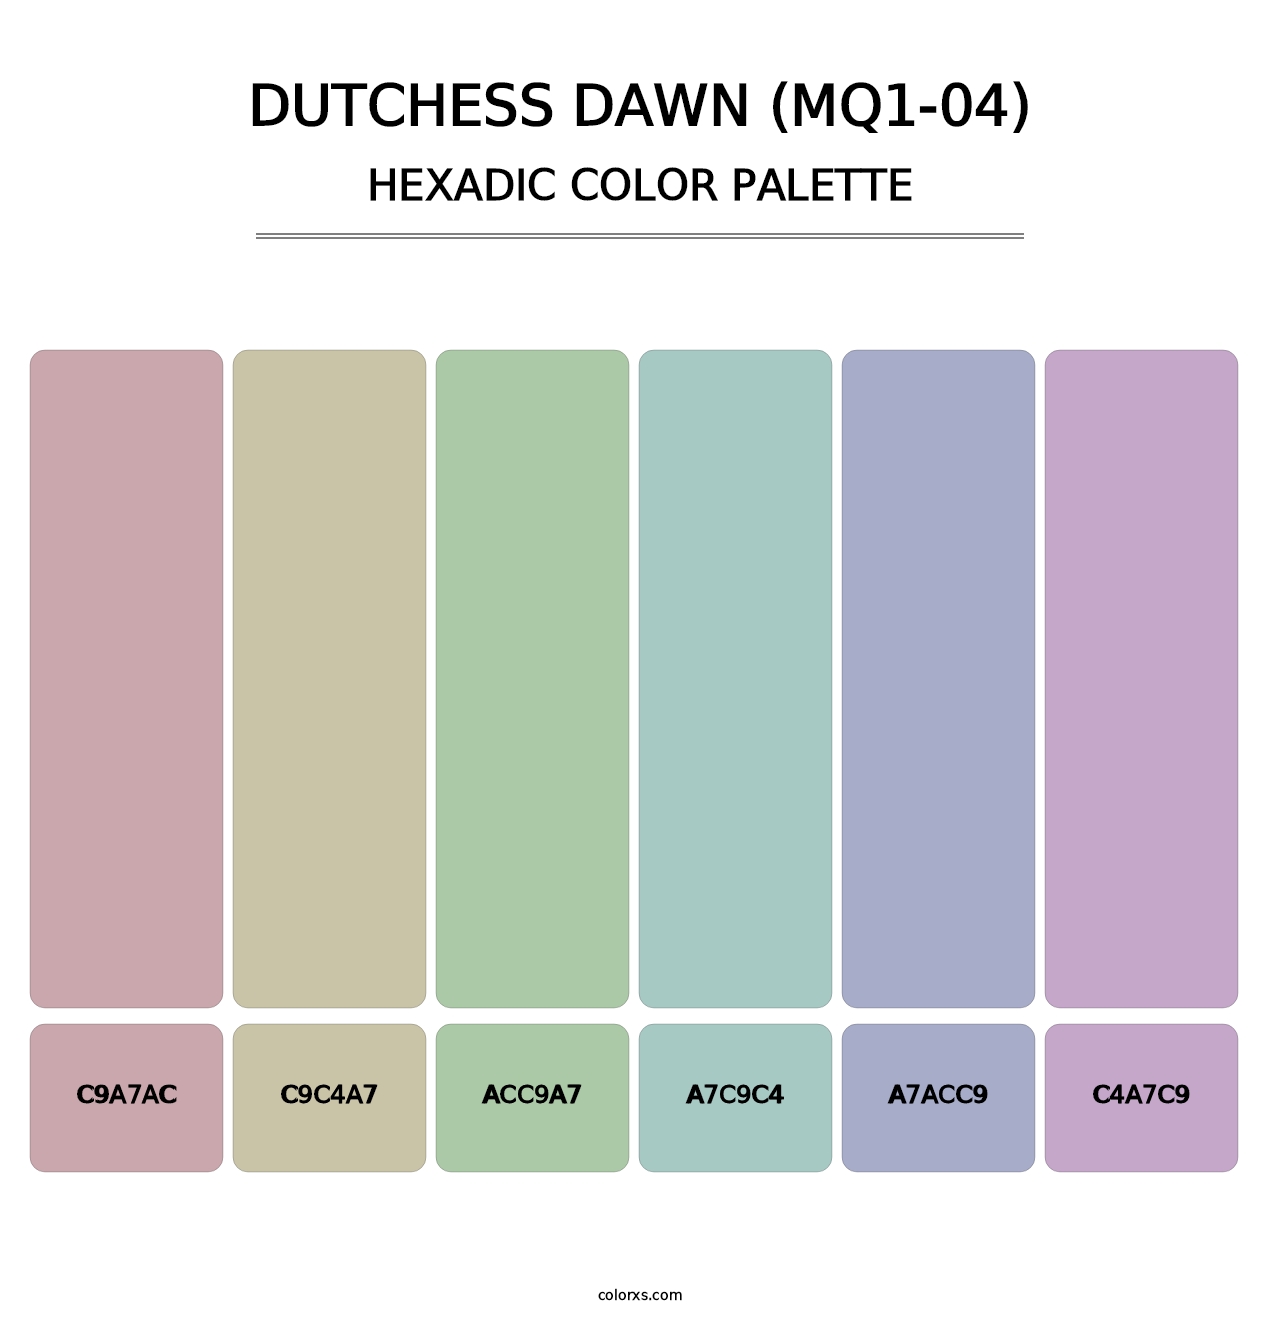 Dutchess Dawn (MQ1-04) - Hexadic Color Palette